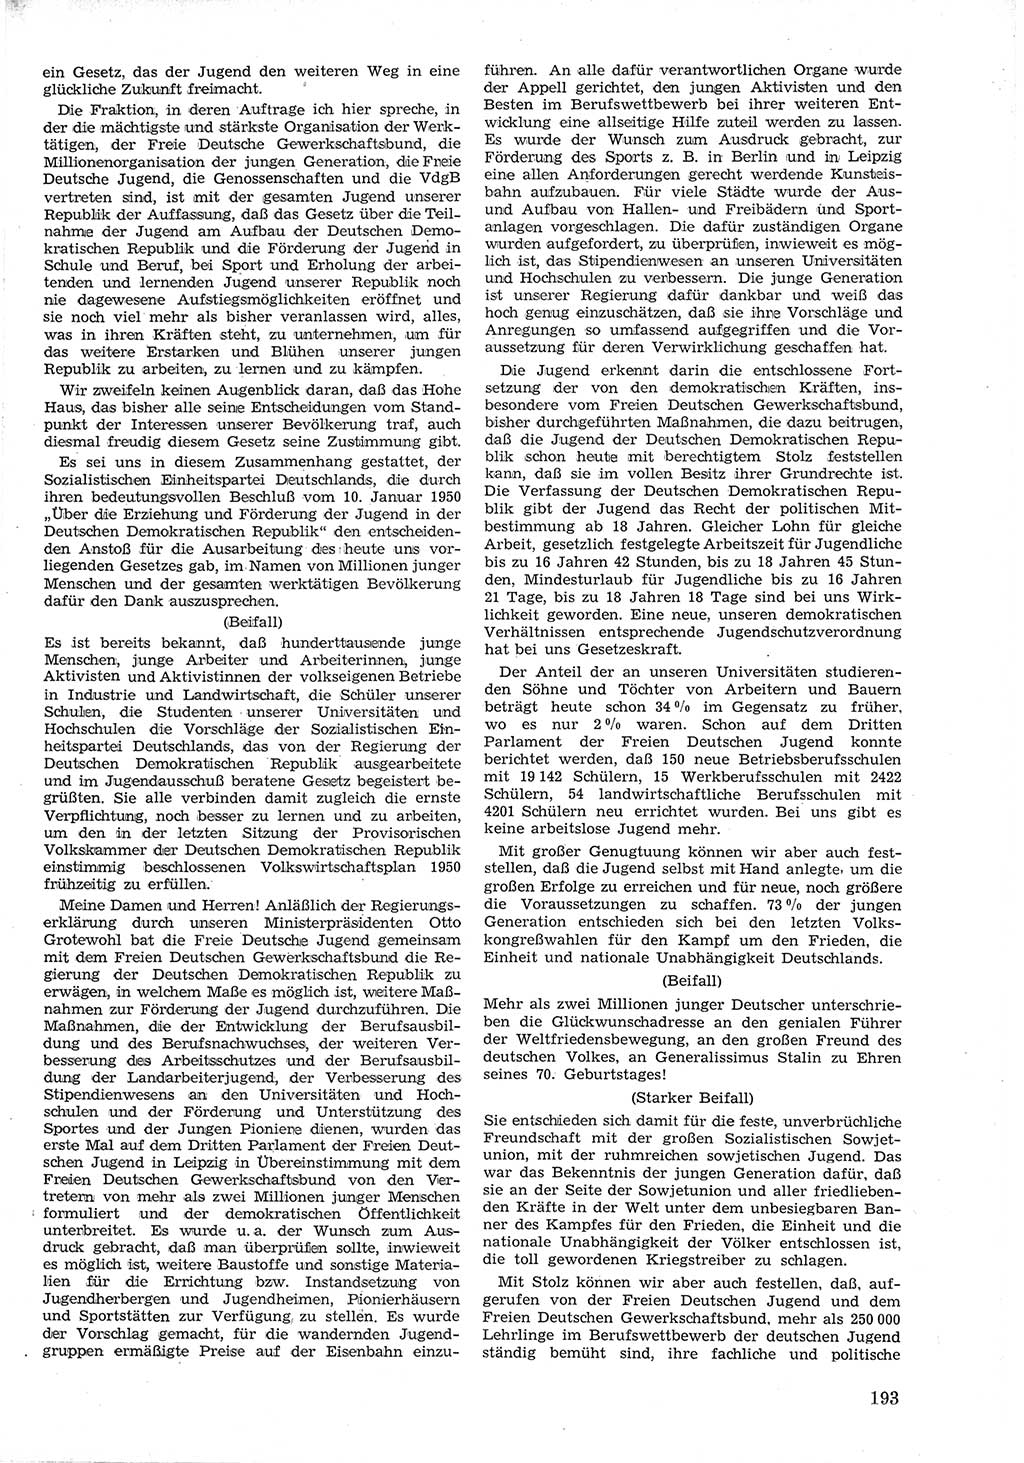 Provisorische Volkskammer (VK) der Deutschen Demokratischen Republik (DDR) 1949-1950, Dokument 205 (Prov. VK DDR 1949-1950, Dok. 205)